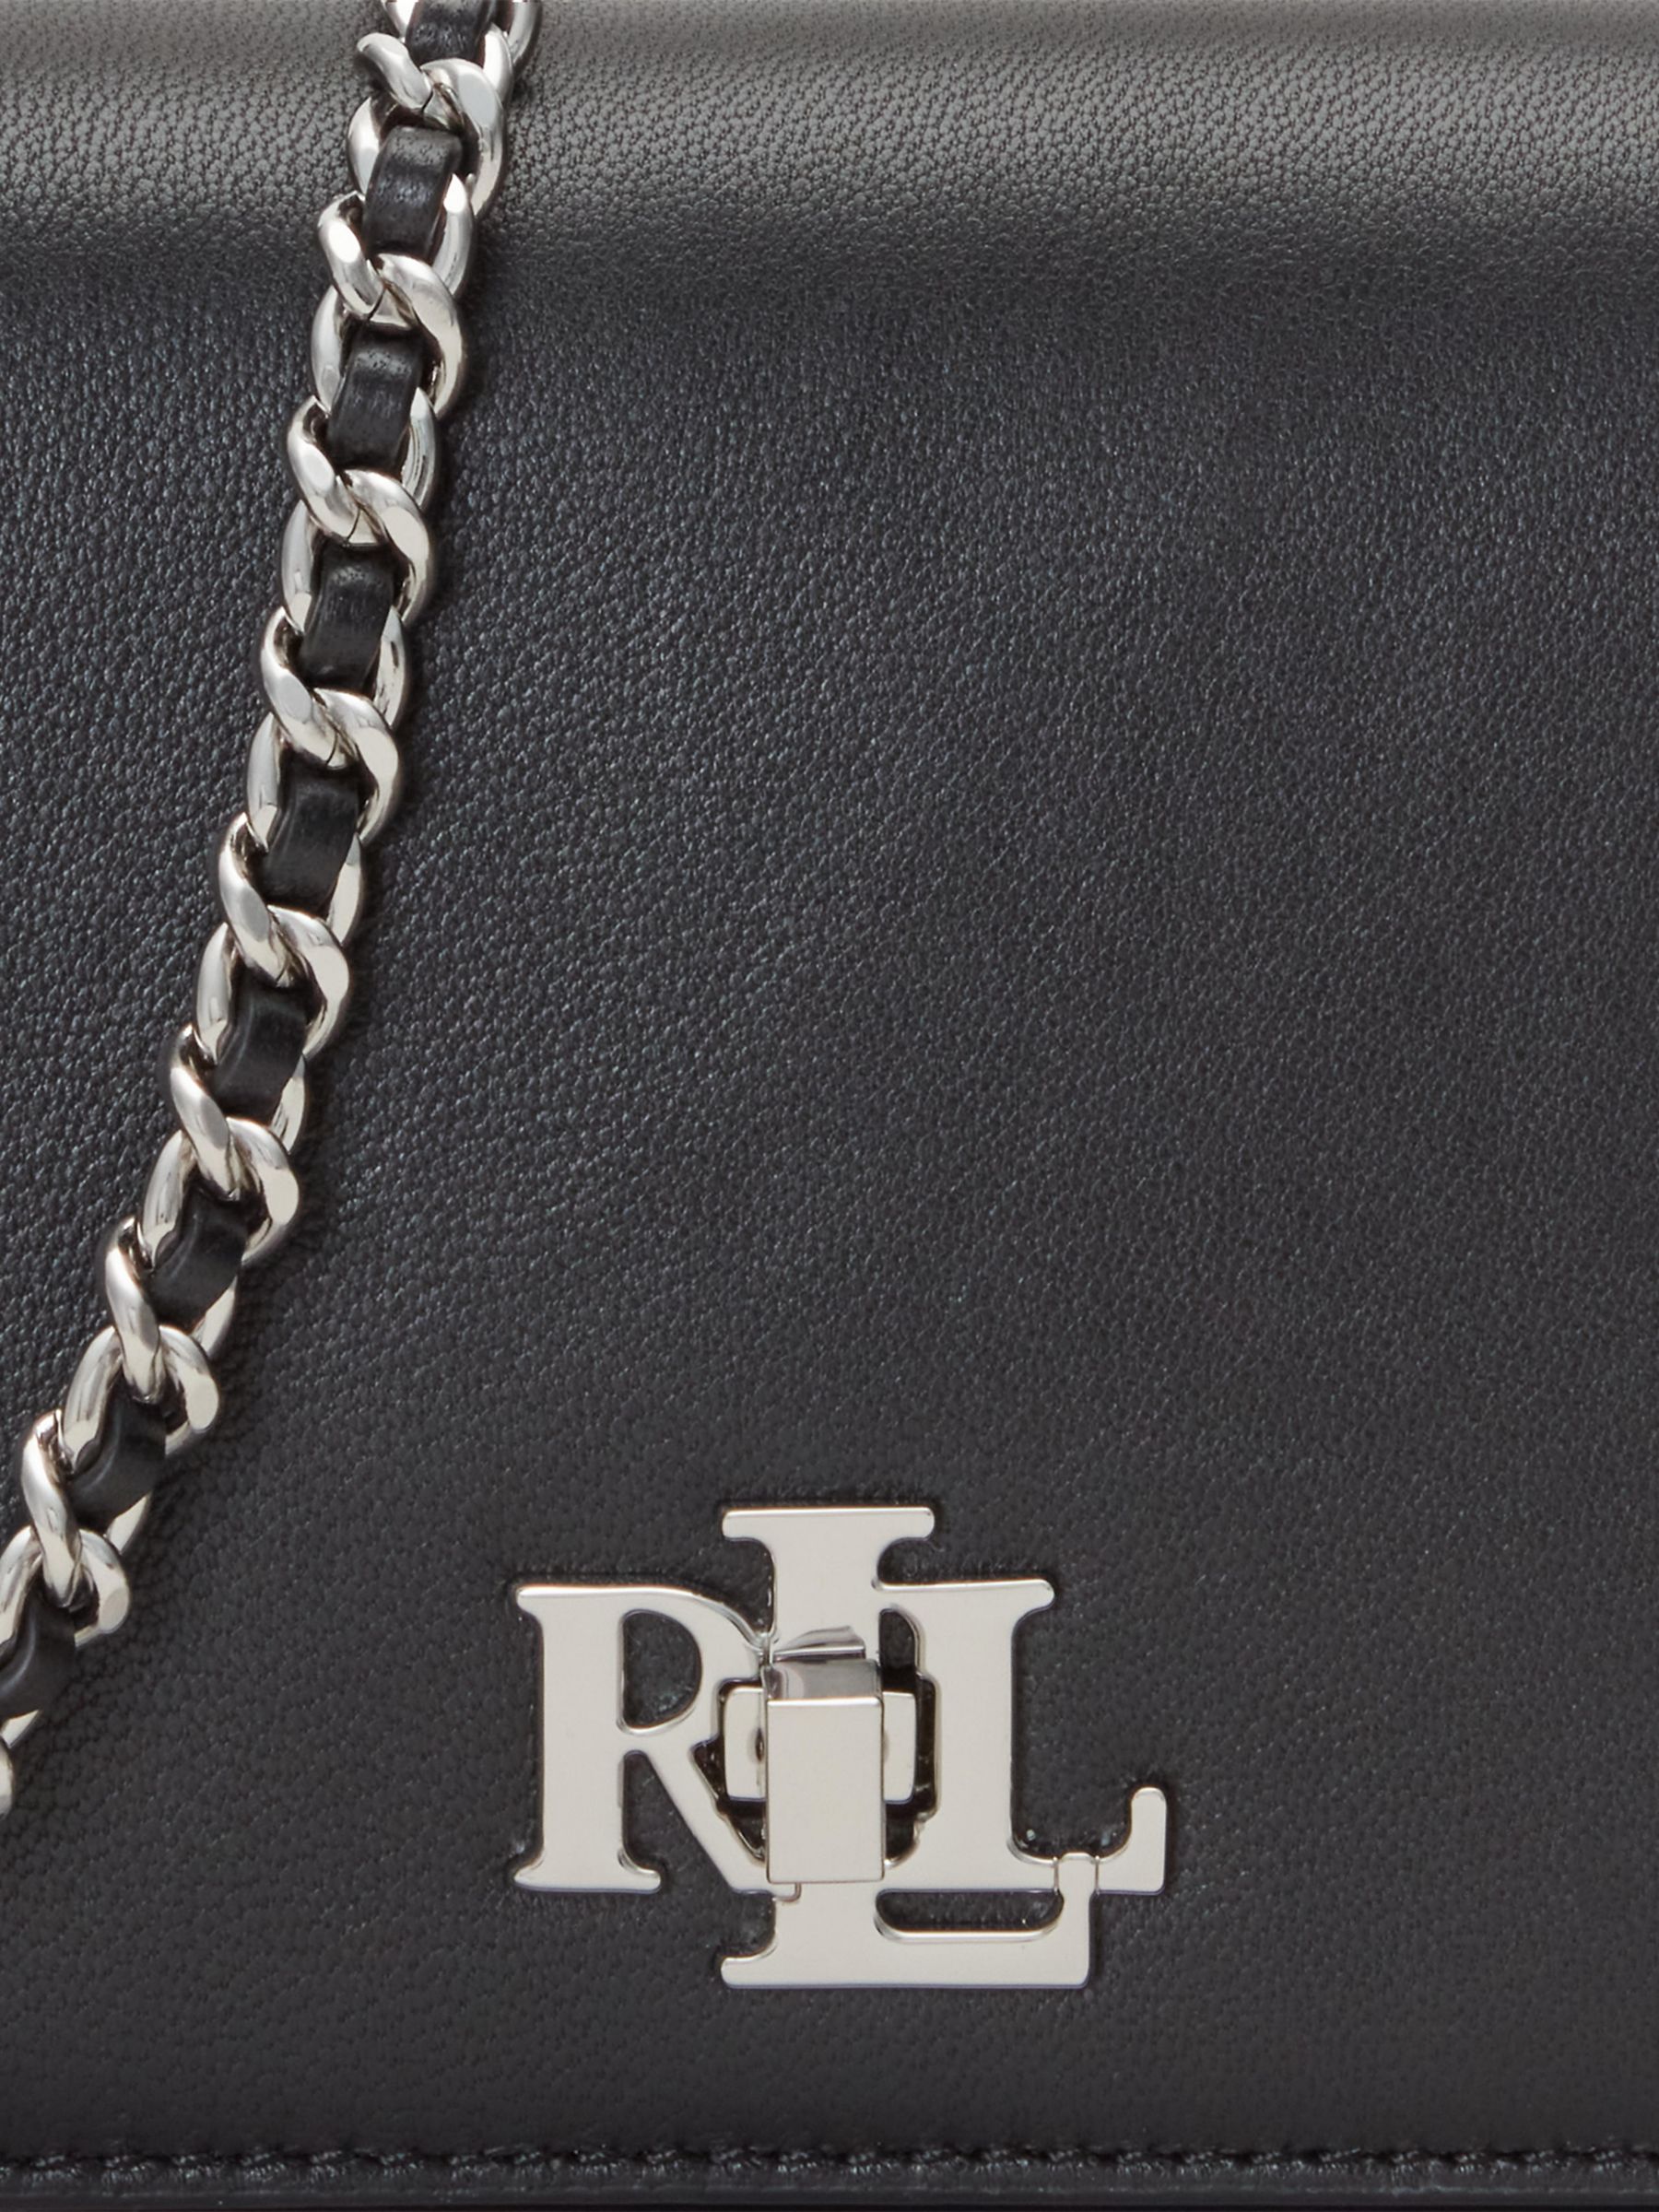 Buy Lauren Ralph Lauren Tech Leather Chain Strap Cross Body Bag Online at johnlewis.com